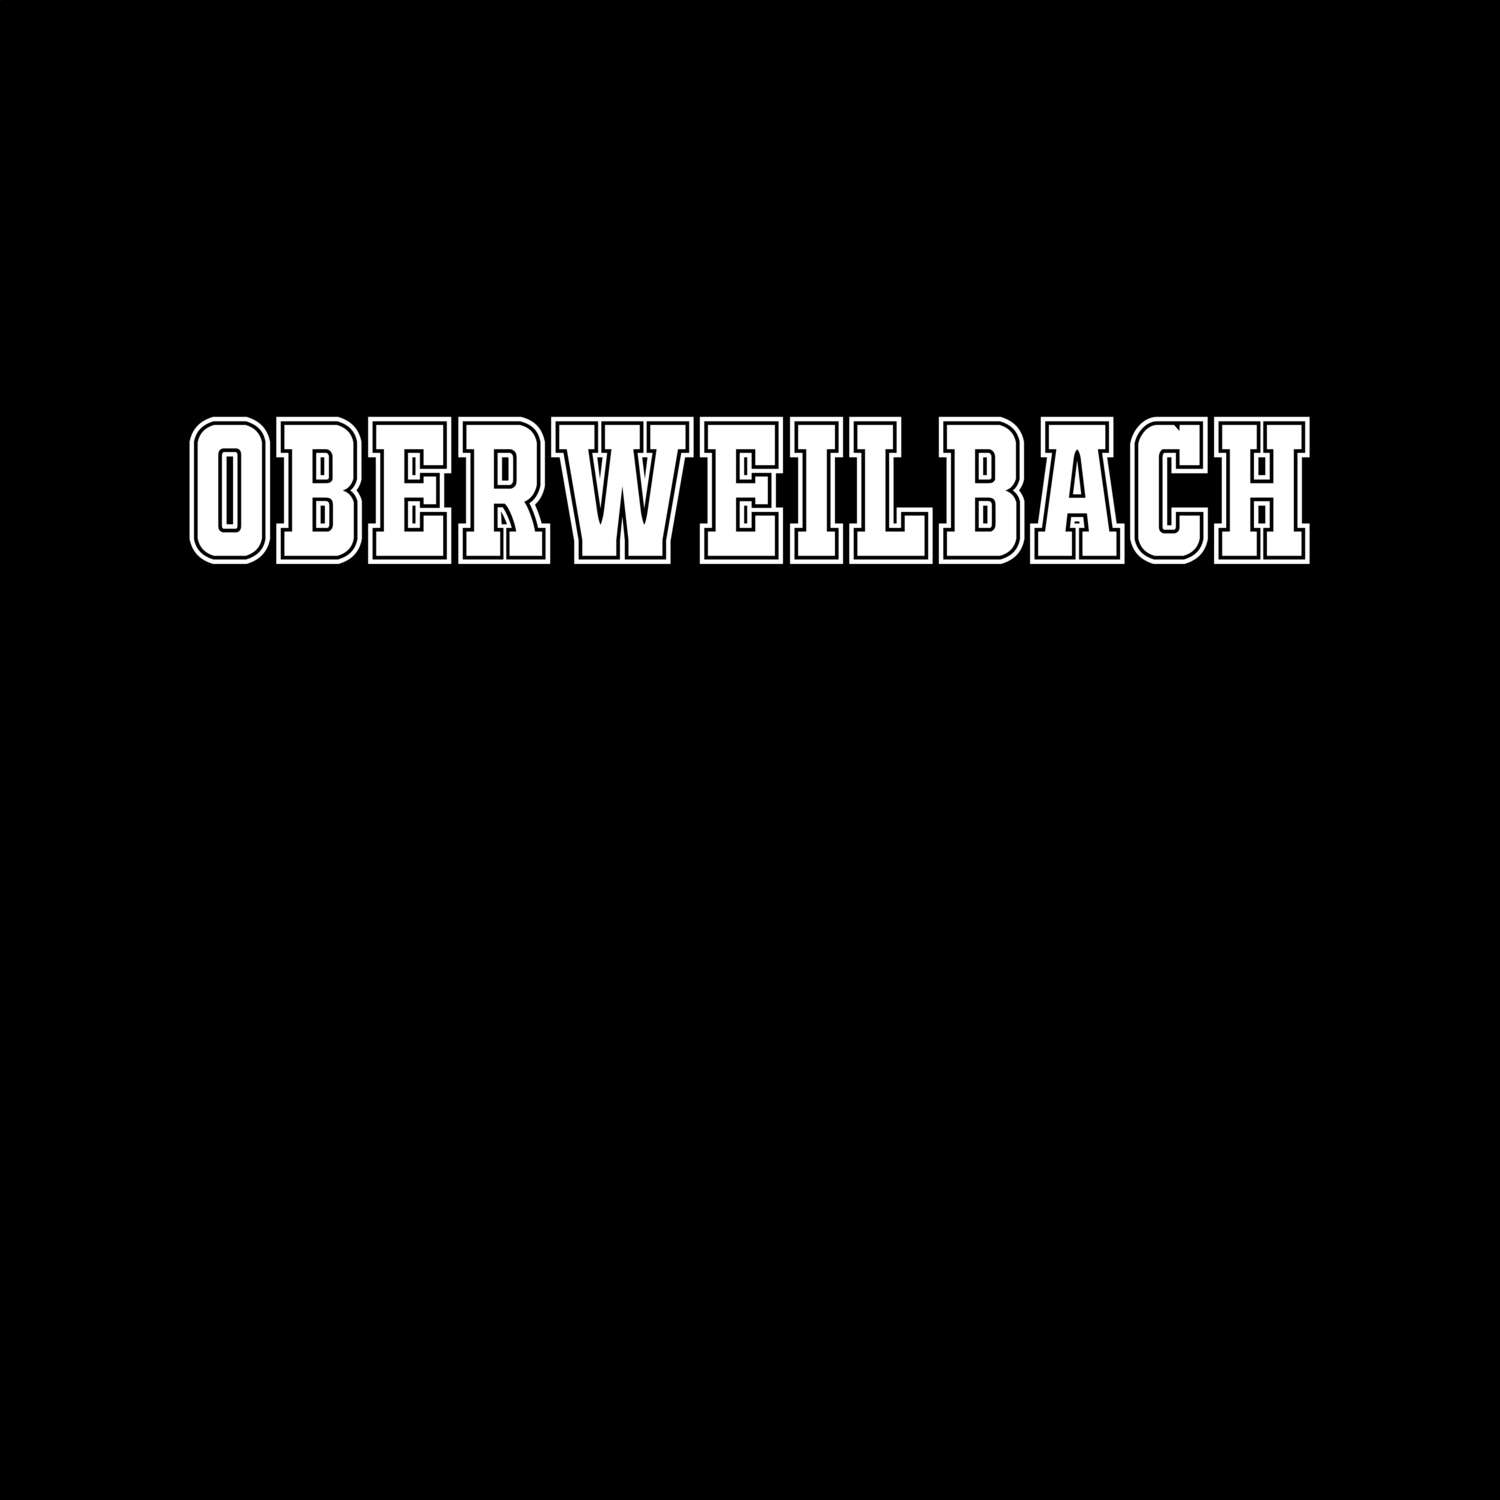 Oberweilbach T-Shirt »Classic«